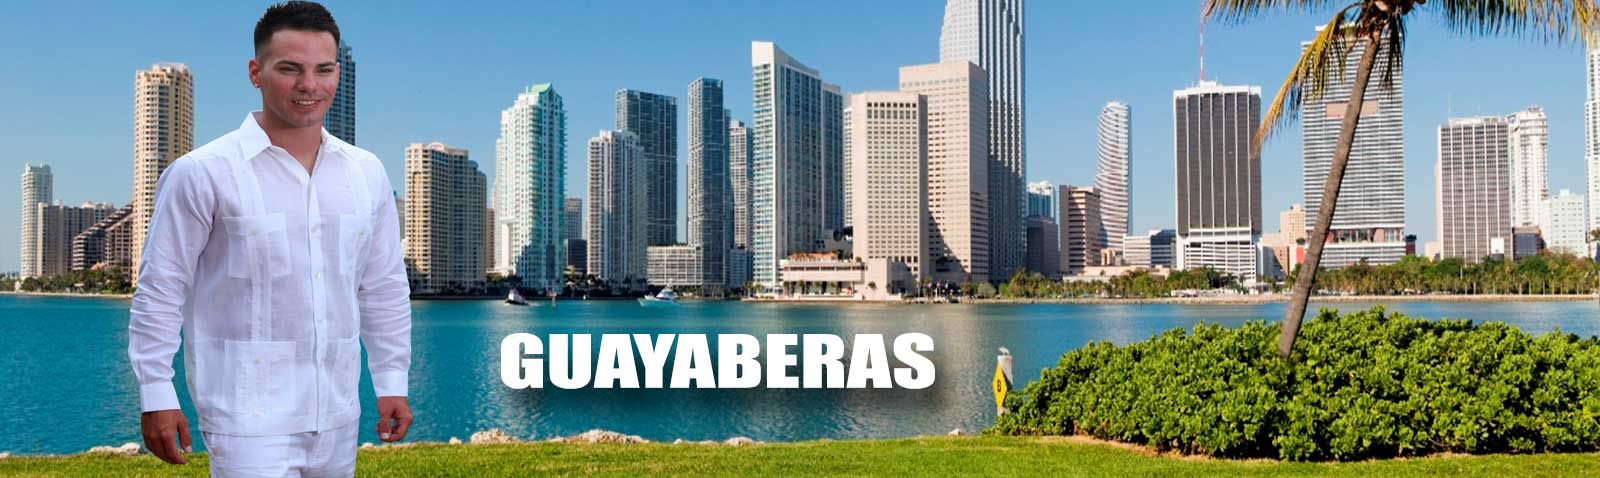 Guayaberas